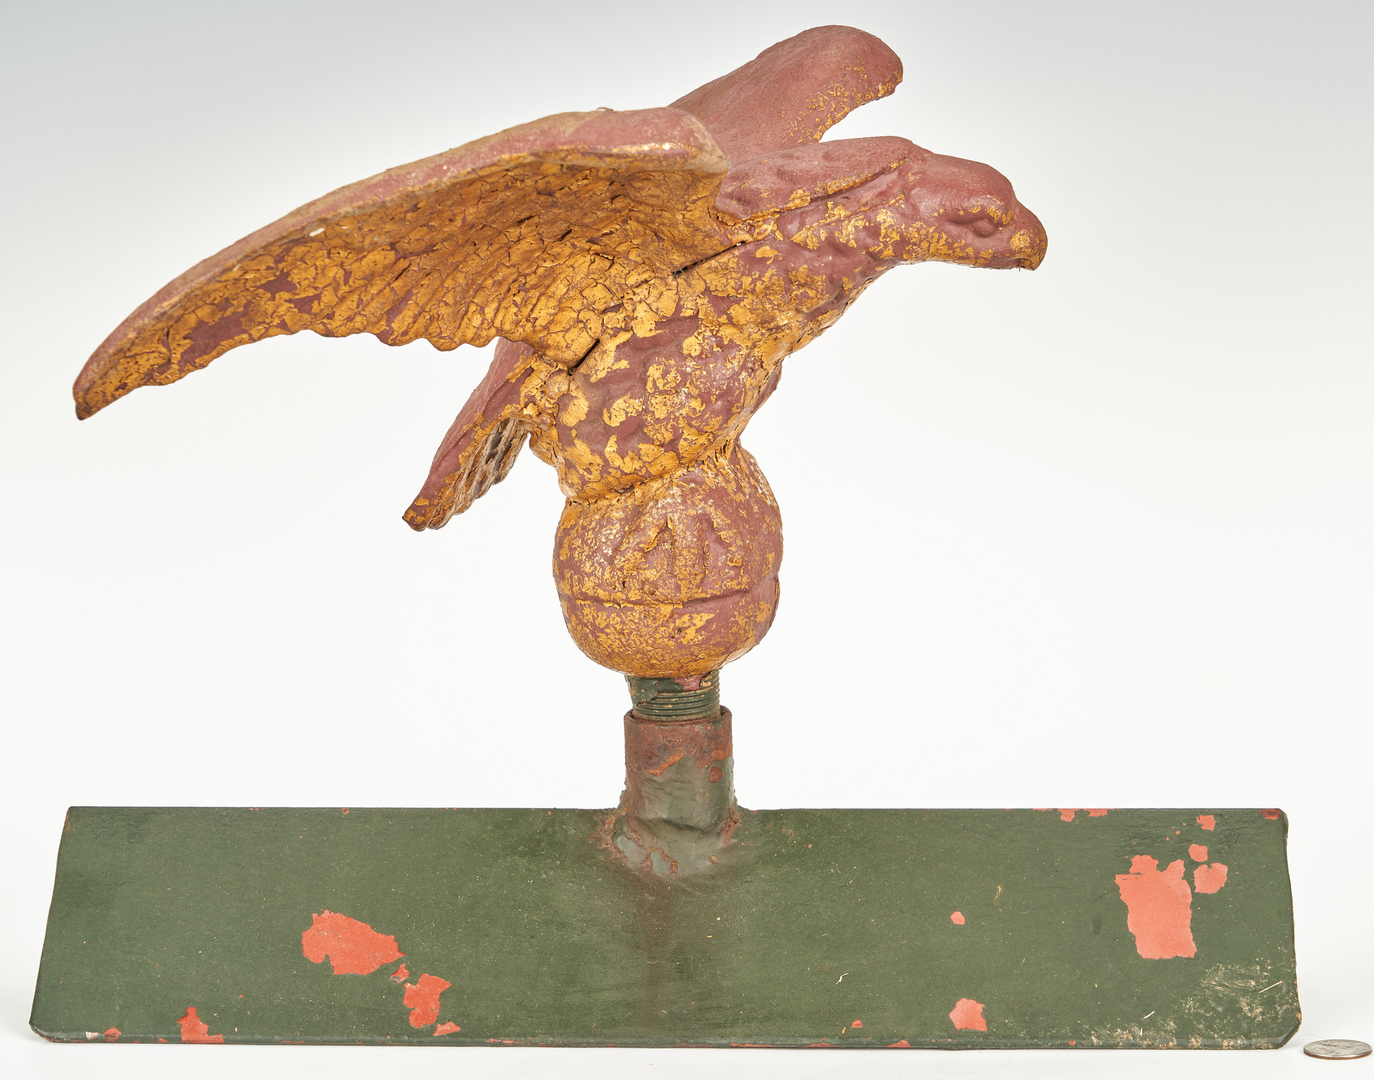 Lot 381: 2 Ornamental Eagle Items